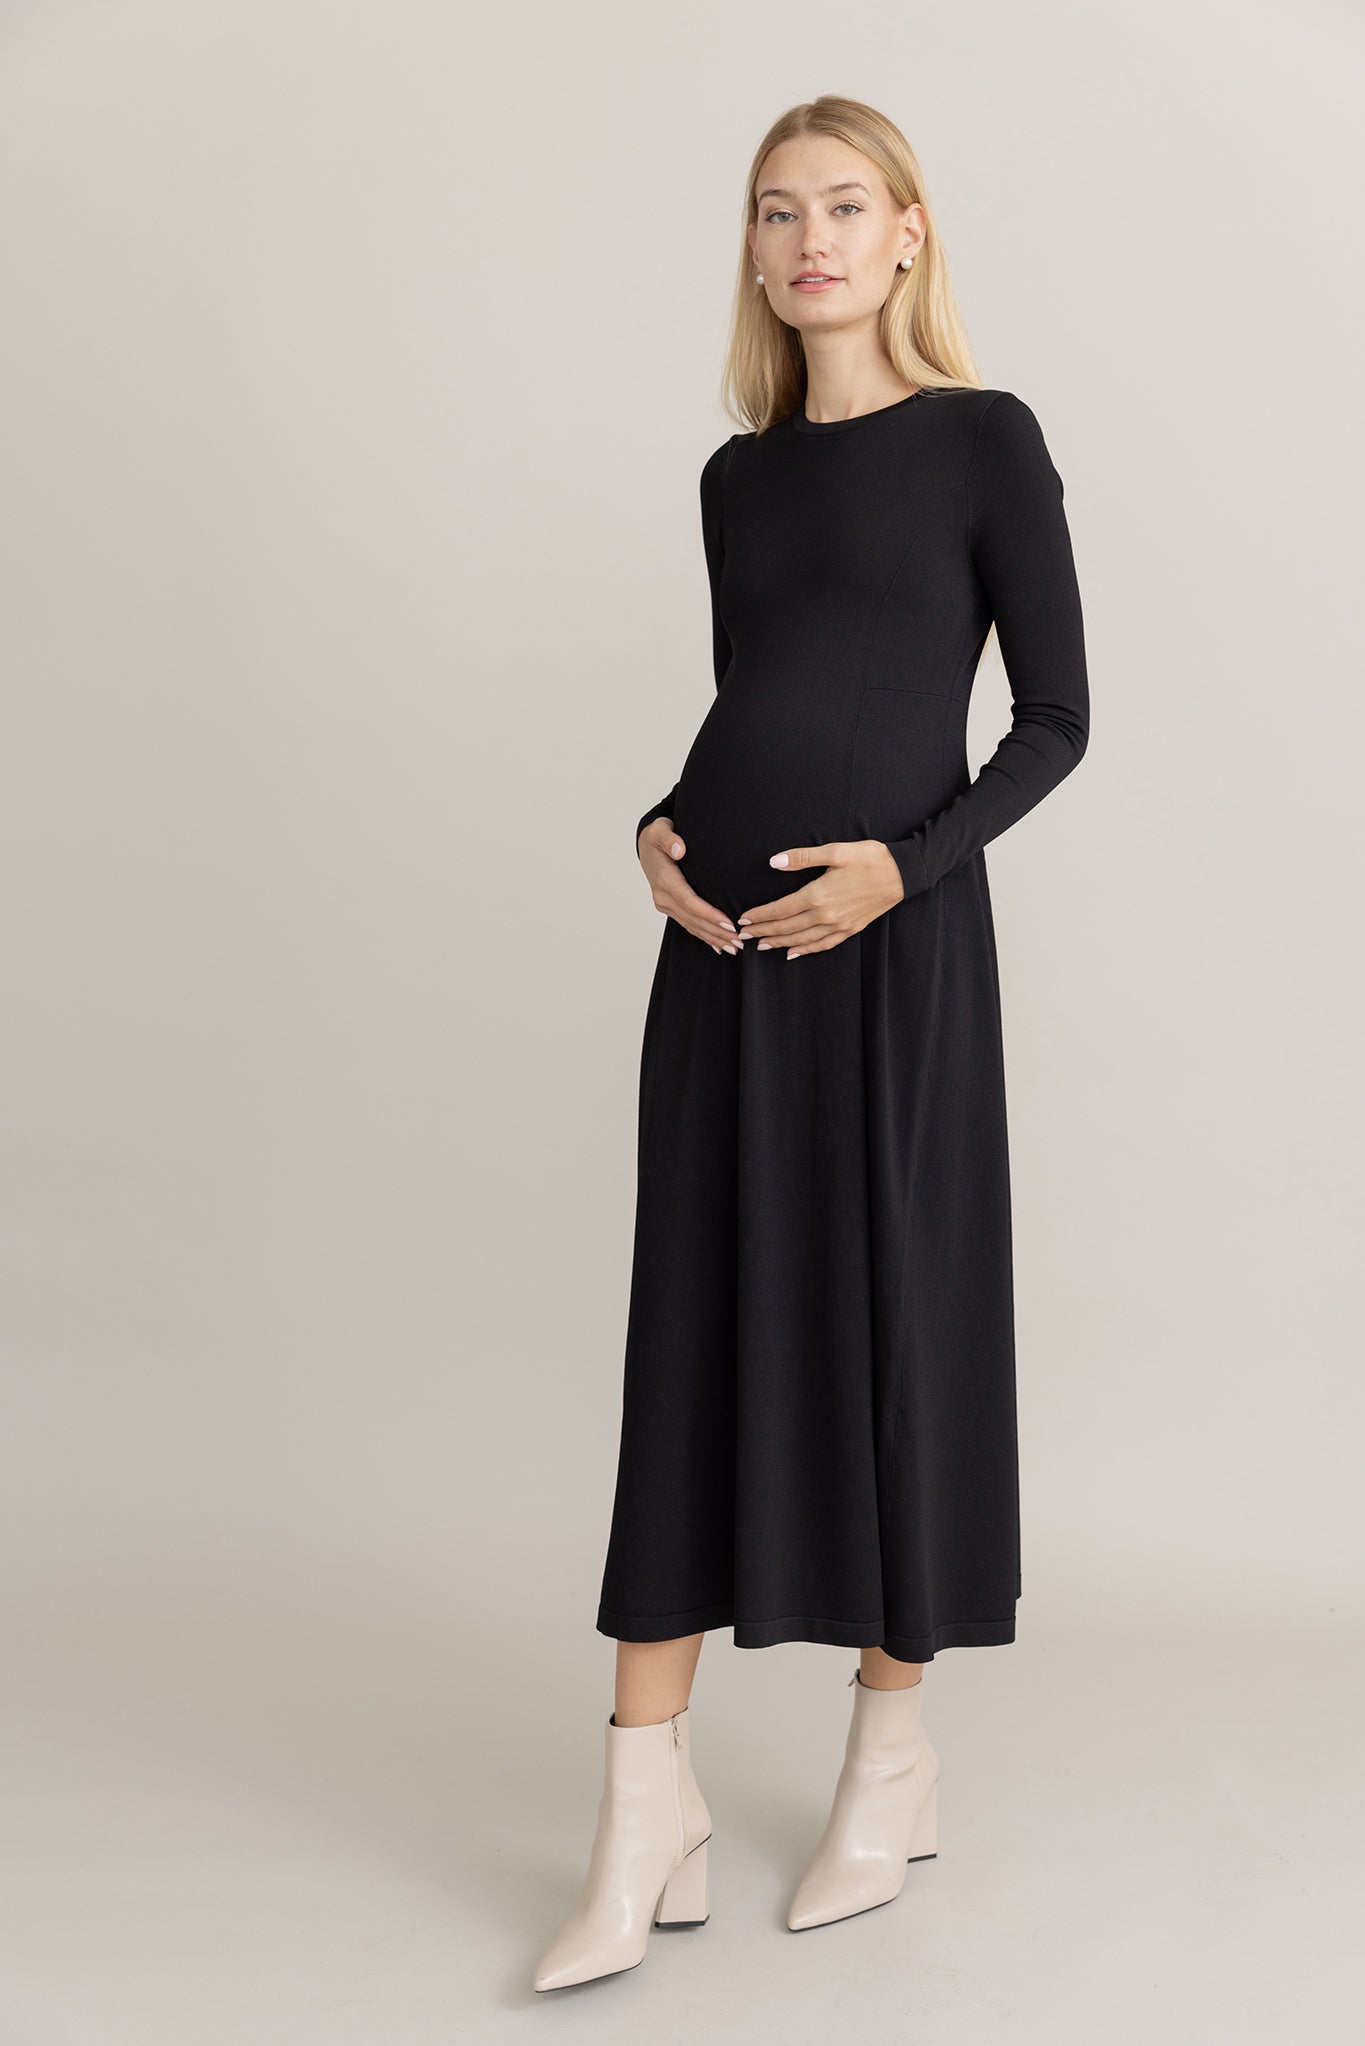 Cadelo Maternity Dress